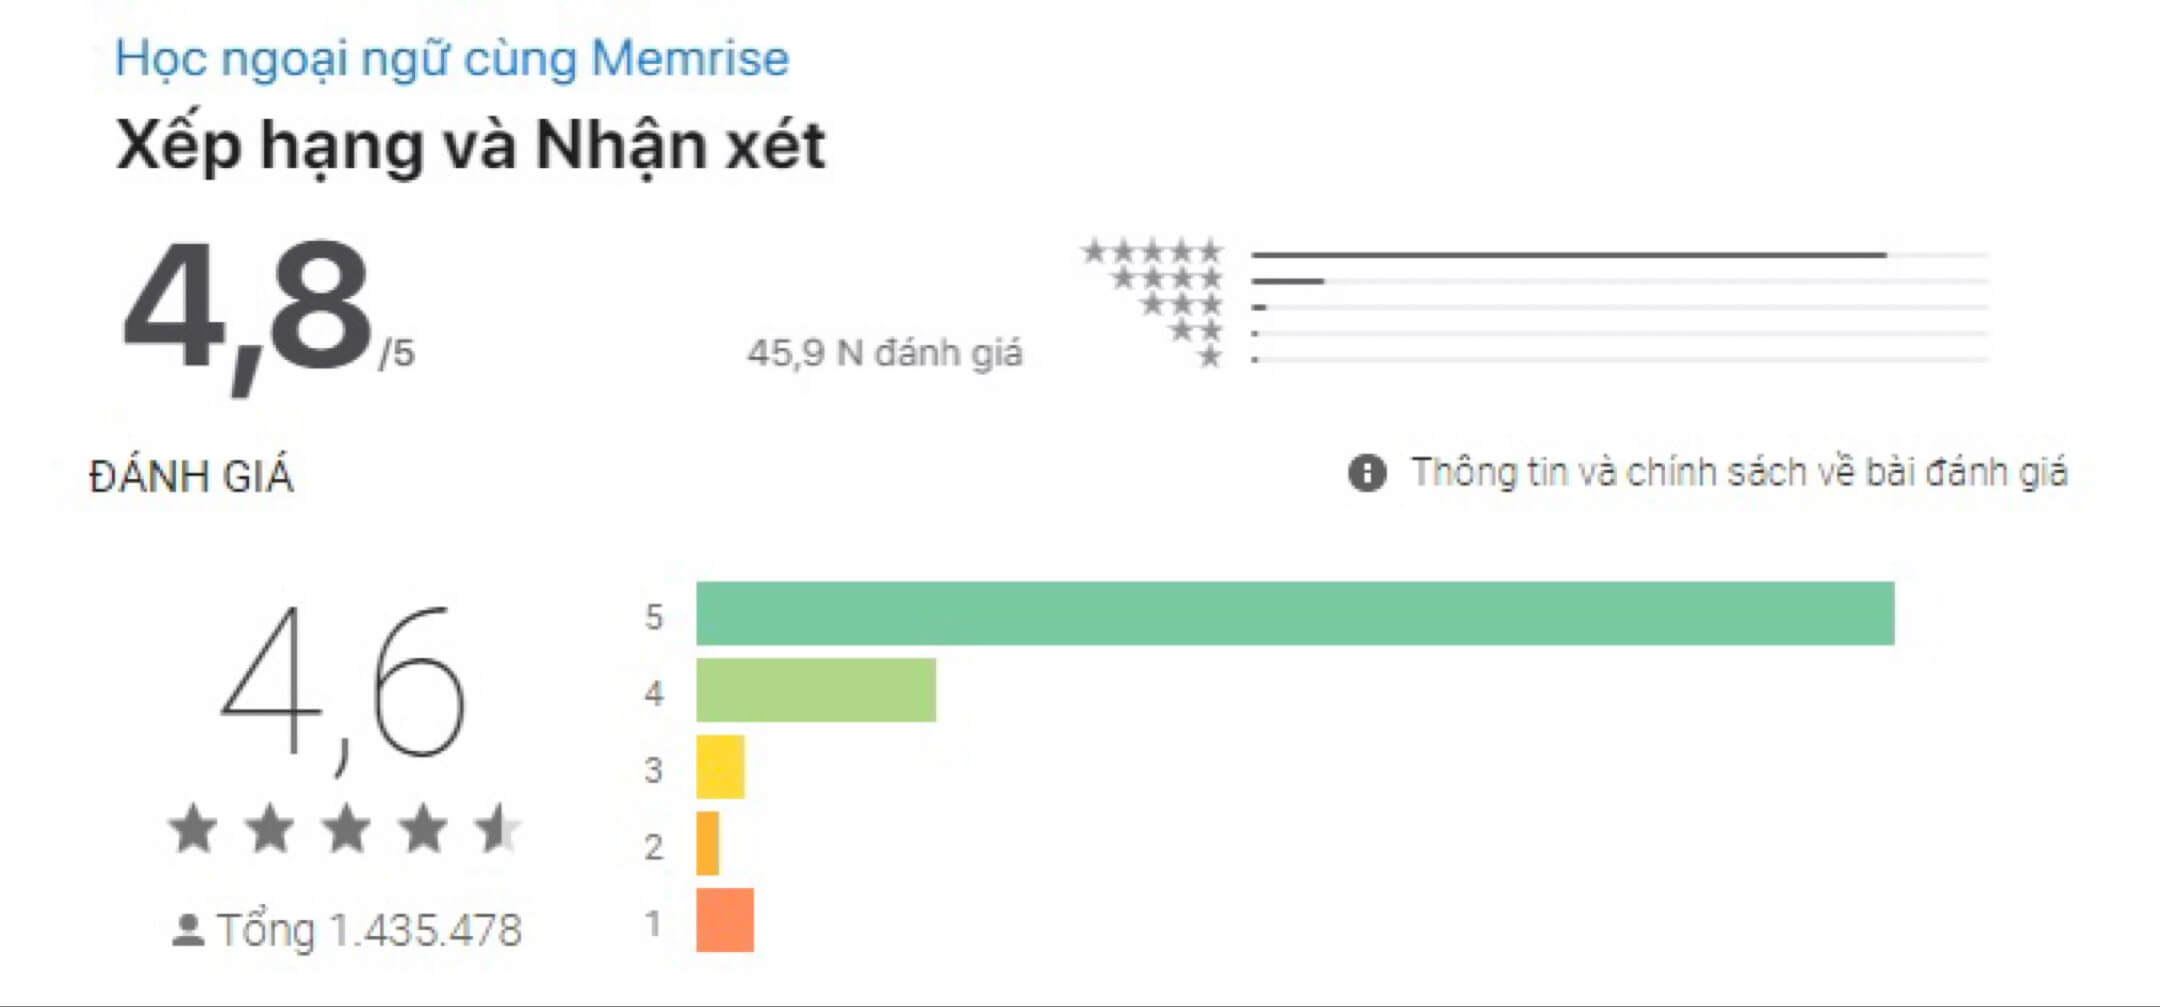 Đánh giá của ứng dụng Memrise trên iOS và Android